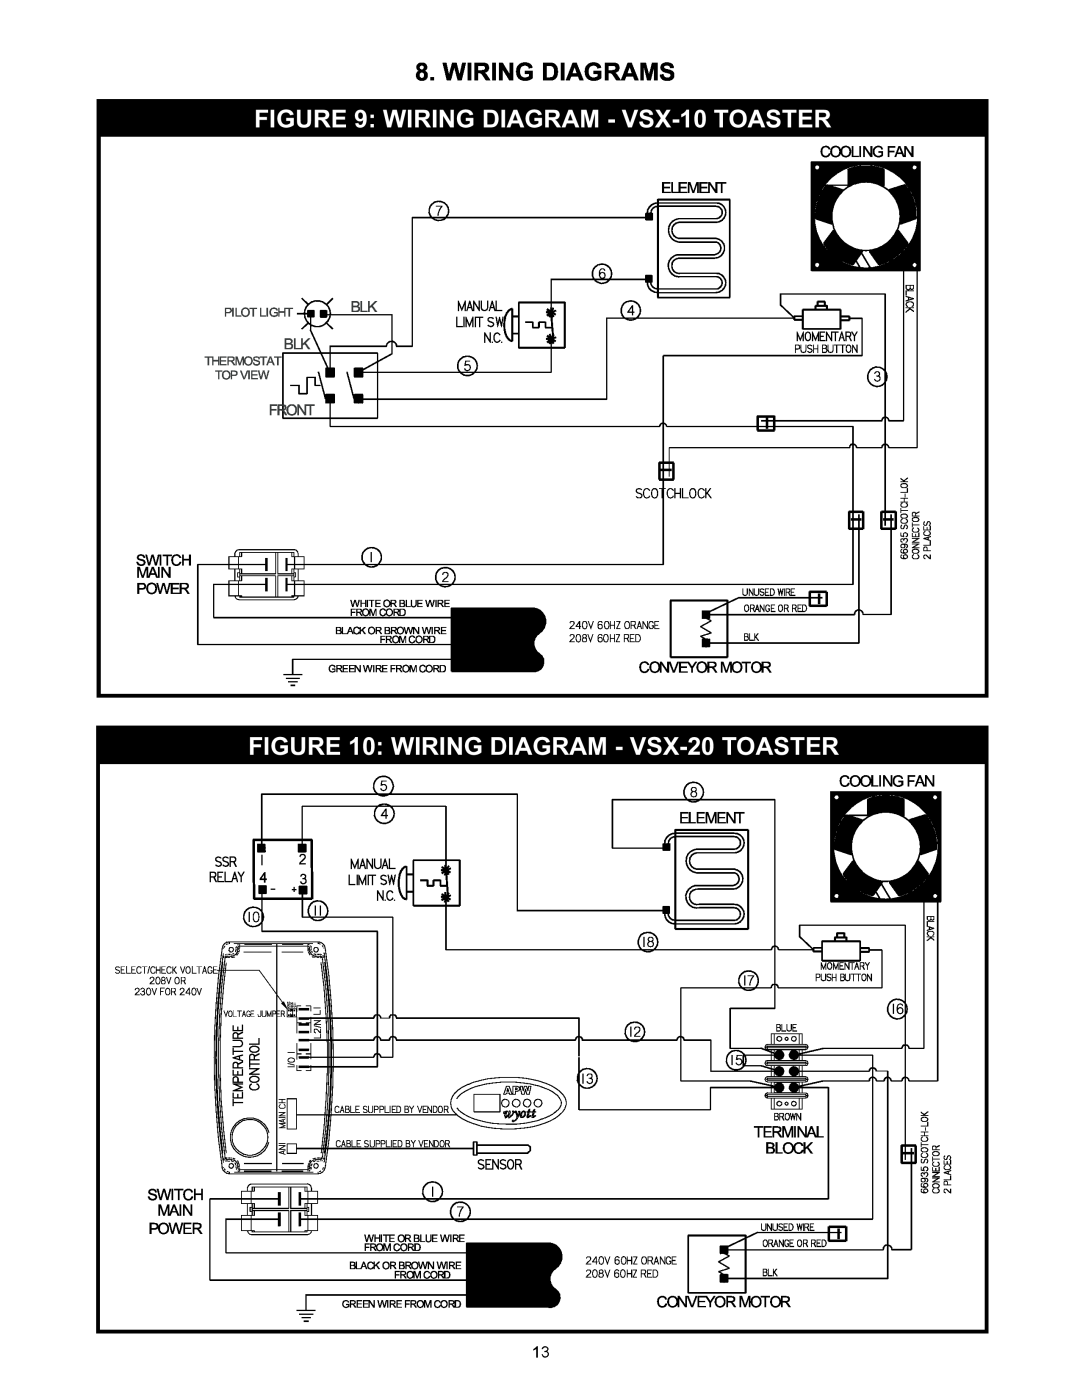 APW Wyott manual Wiring Diagrams, WIRING DIAGRAM - VSX-10 TOASTER, WIRING DIAGRAM - VSX-20 TOASTER, Manual, Limit Sw 